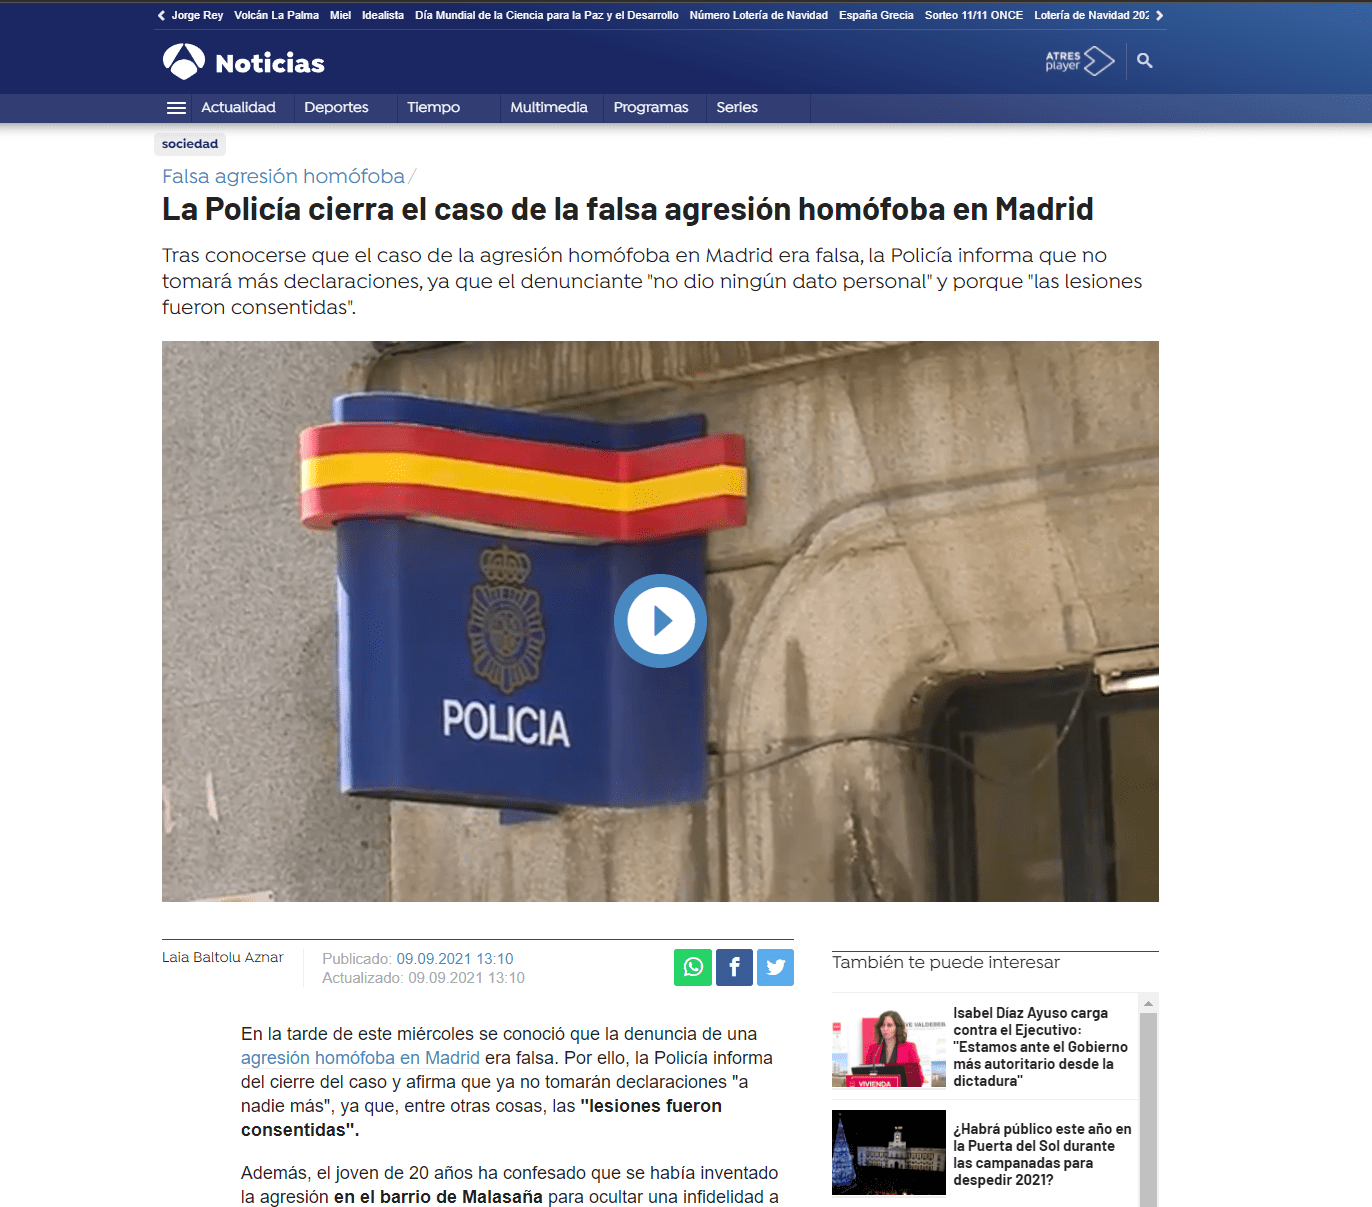 La Policía cierra el caso de la falsa agresión homófoba en Madrid